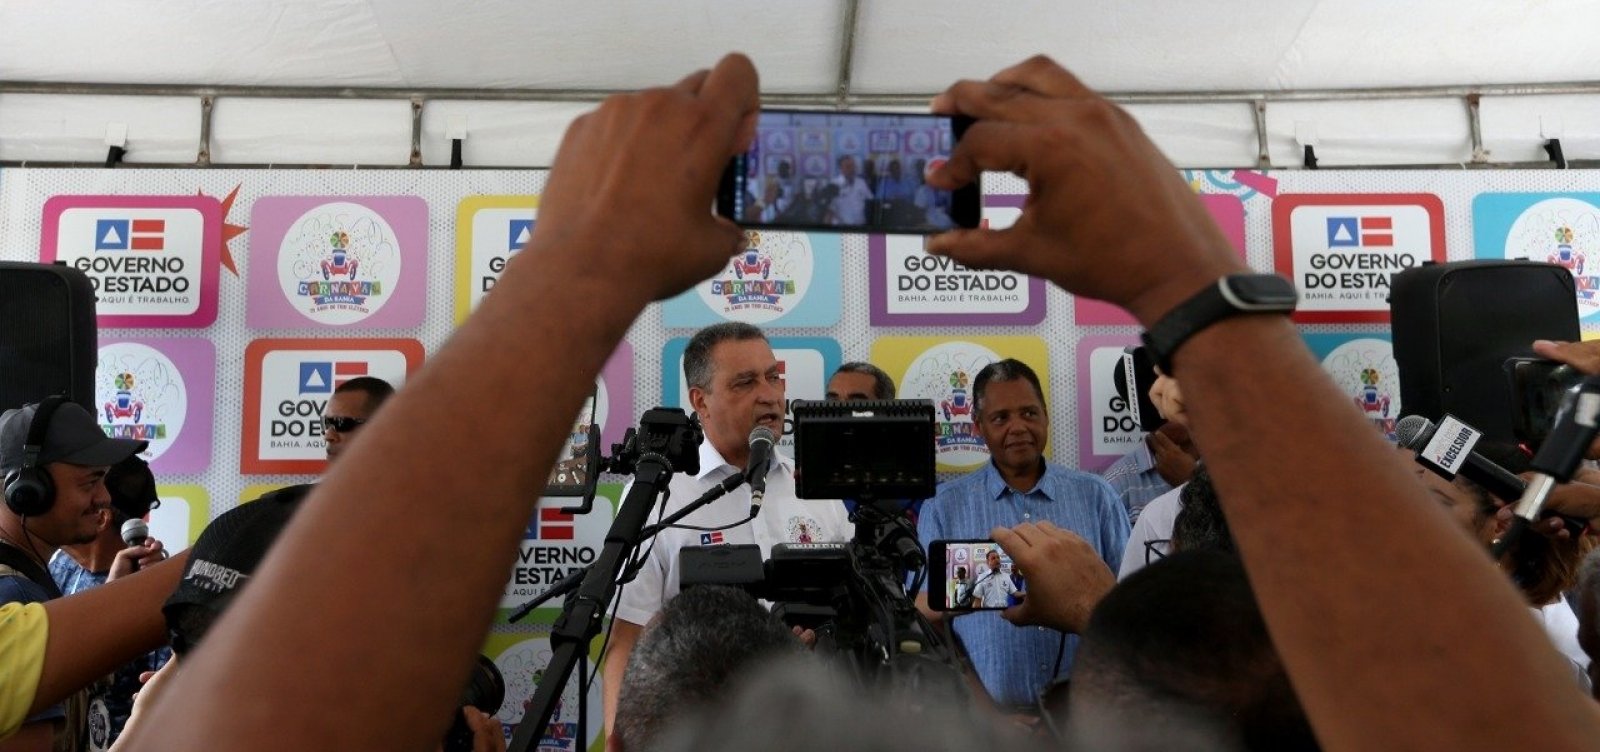 Caso Adriano: Governador diz não cabe a ele dar 'palpite' sobre ação policial  